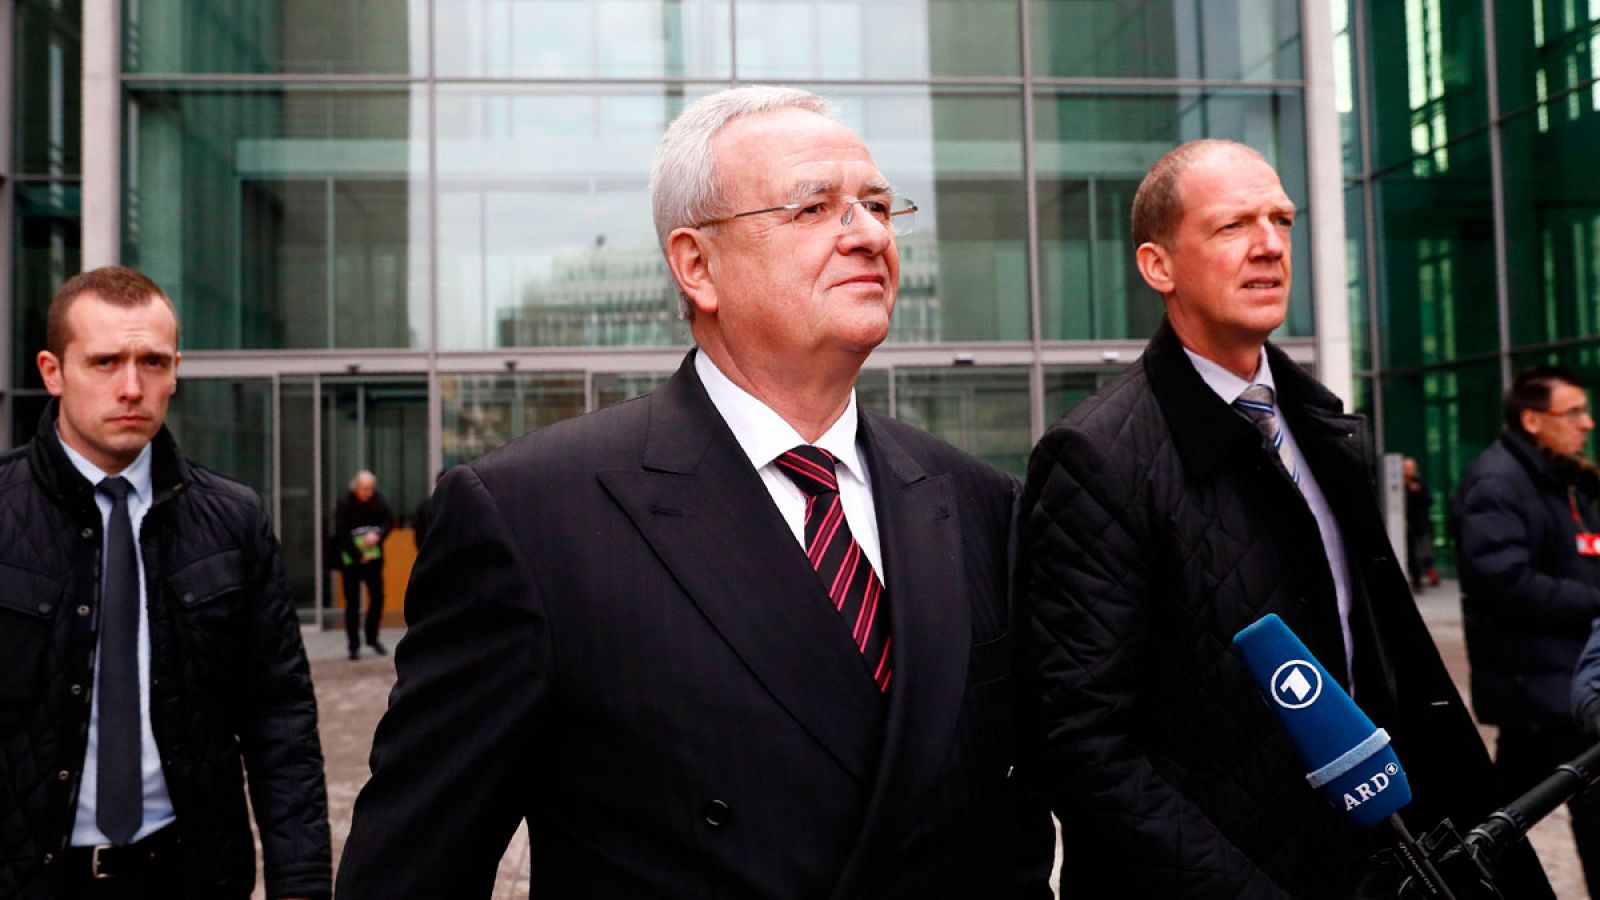 El expresidente de la junta directiva de Volkswagen Martin Winterkorn, acusado de conspiración y fraude